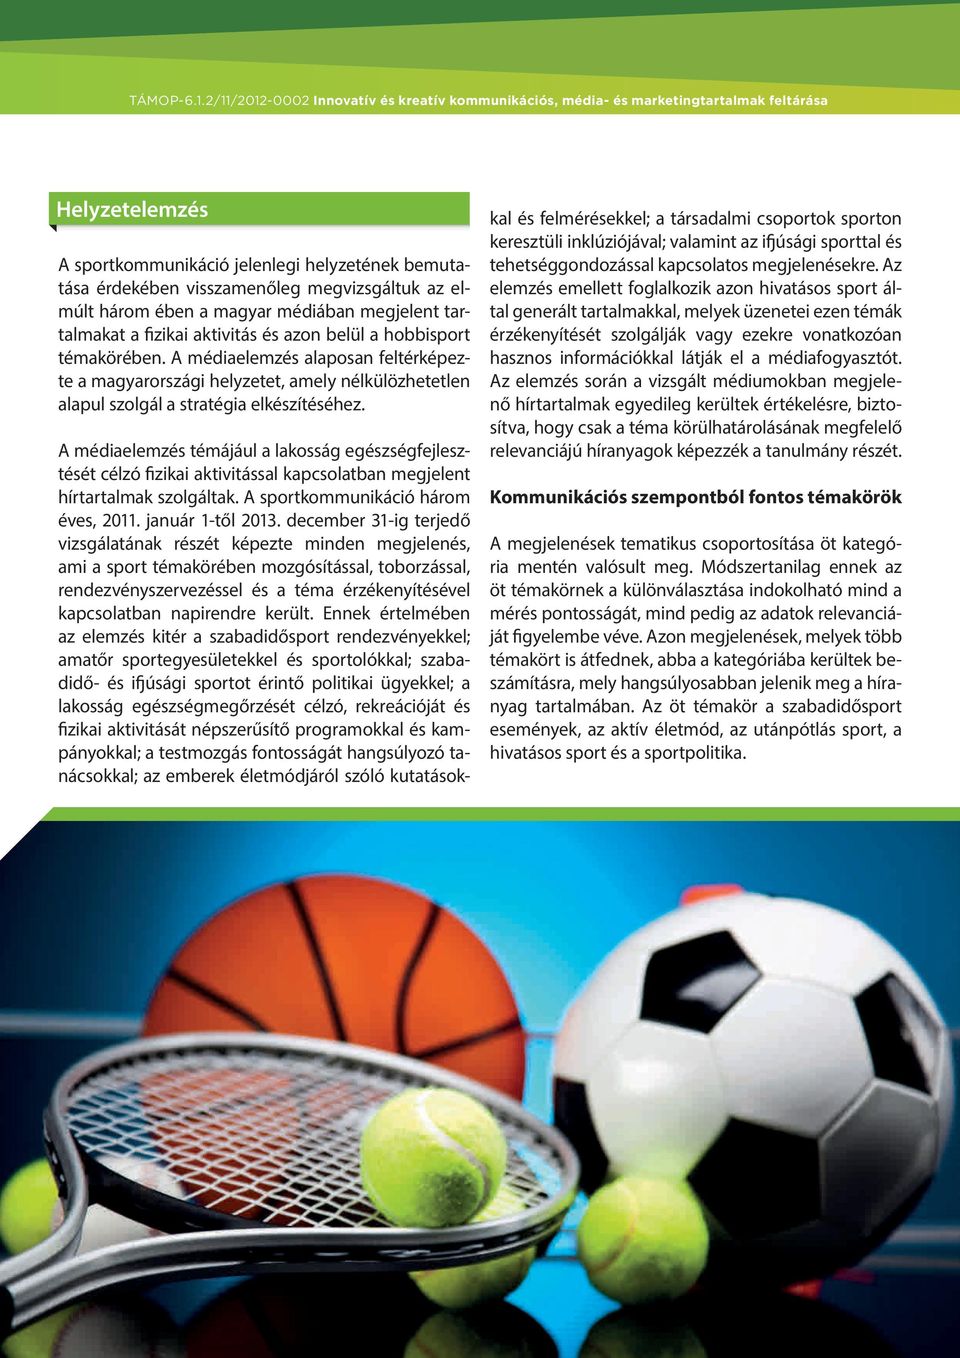 A médiaelemzés témájául a lakosság egészségfejlesztését célzó fizikai aktivitással kapcsolatban megjelent hírtartalmak szolgáltak. A sportkommunikáció három éves, 2011. január 1-től 2013.